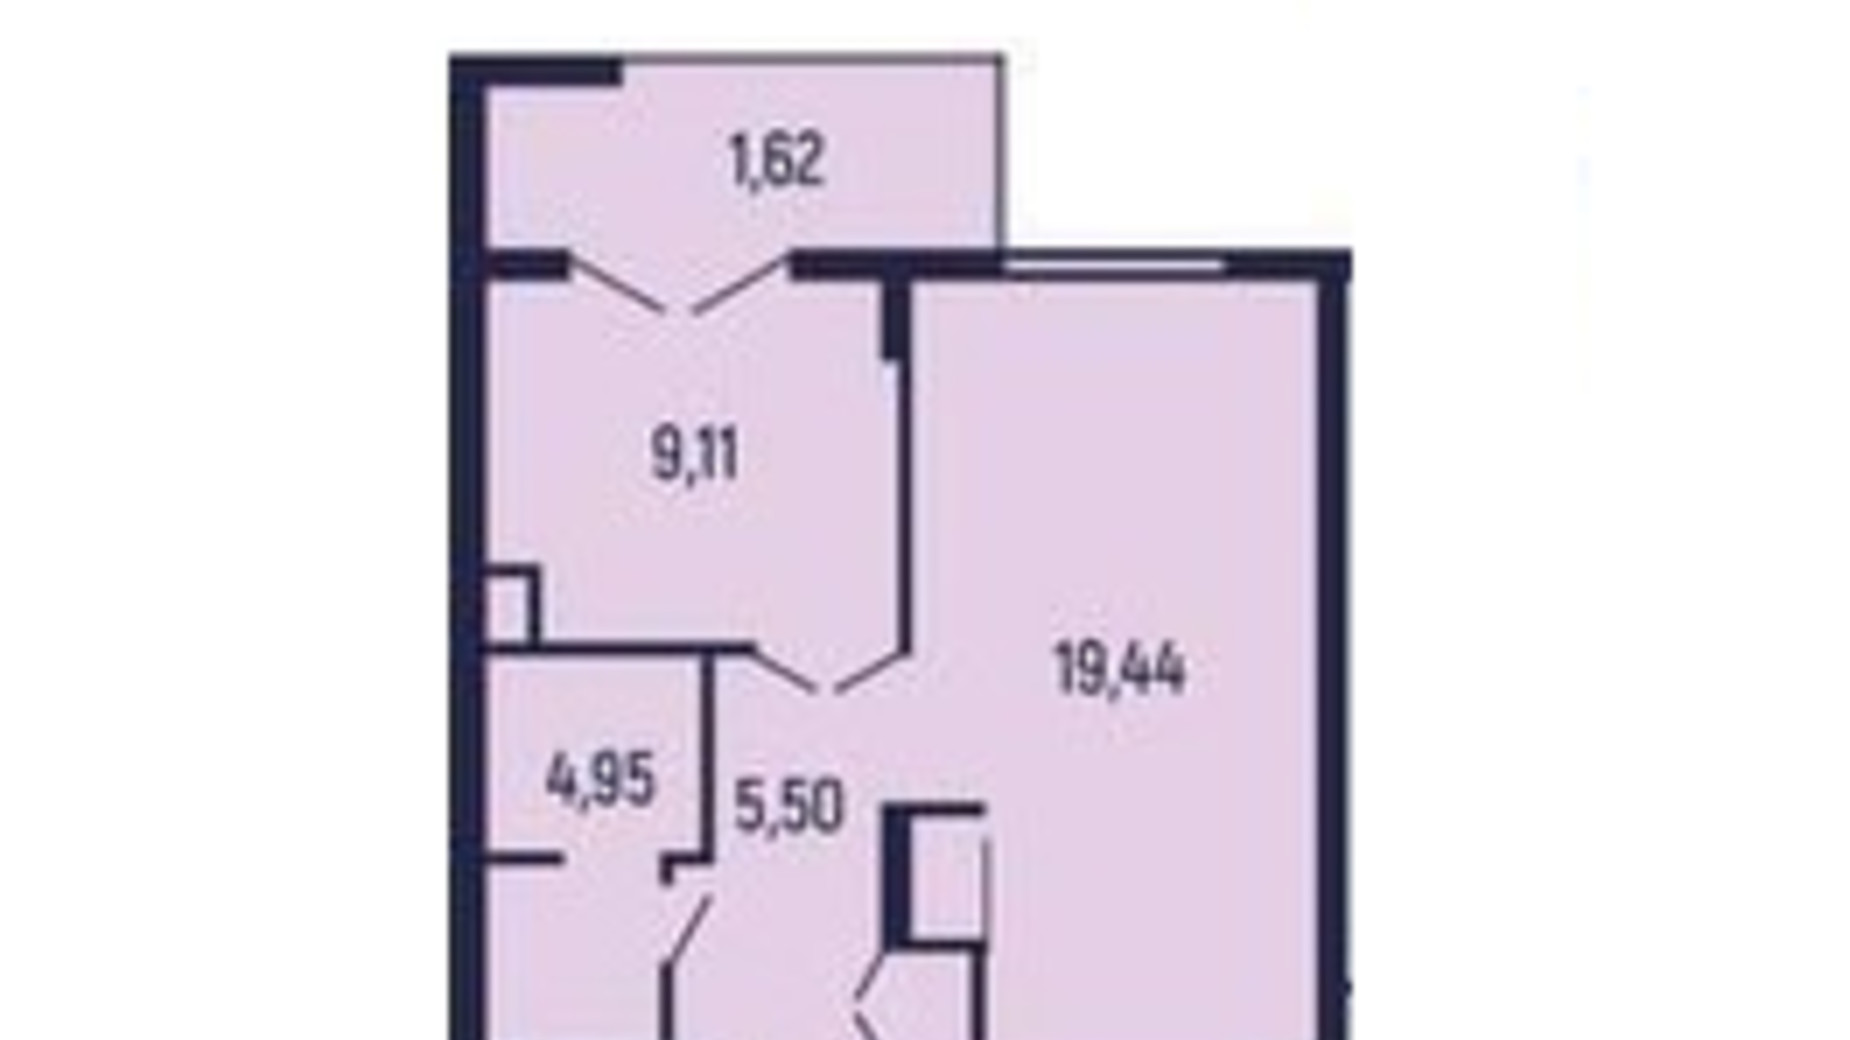 Планування 1-кімнатної квартири в Квартал Royal Town 40.62 м², фото 602063